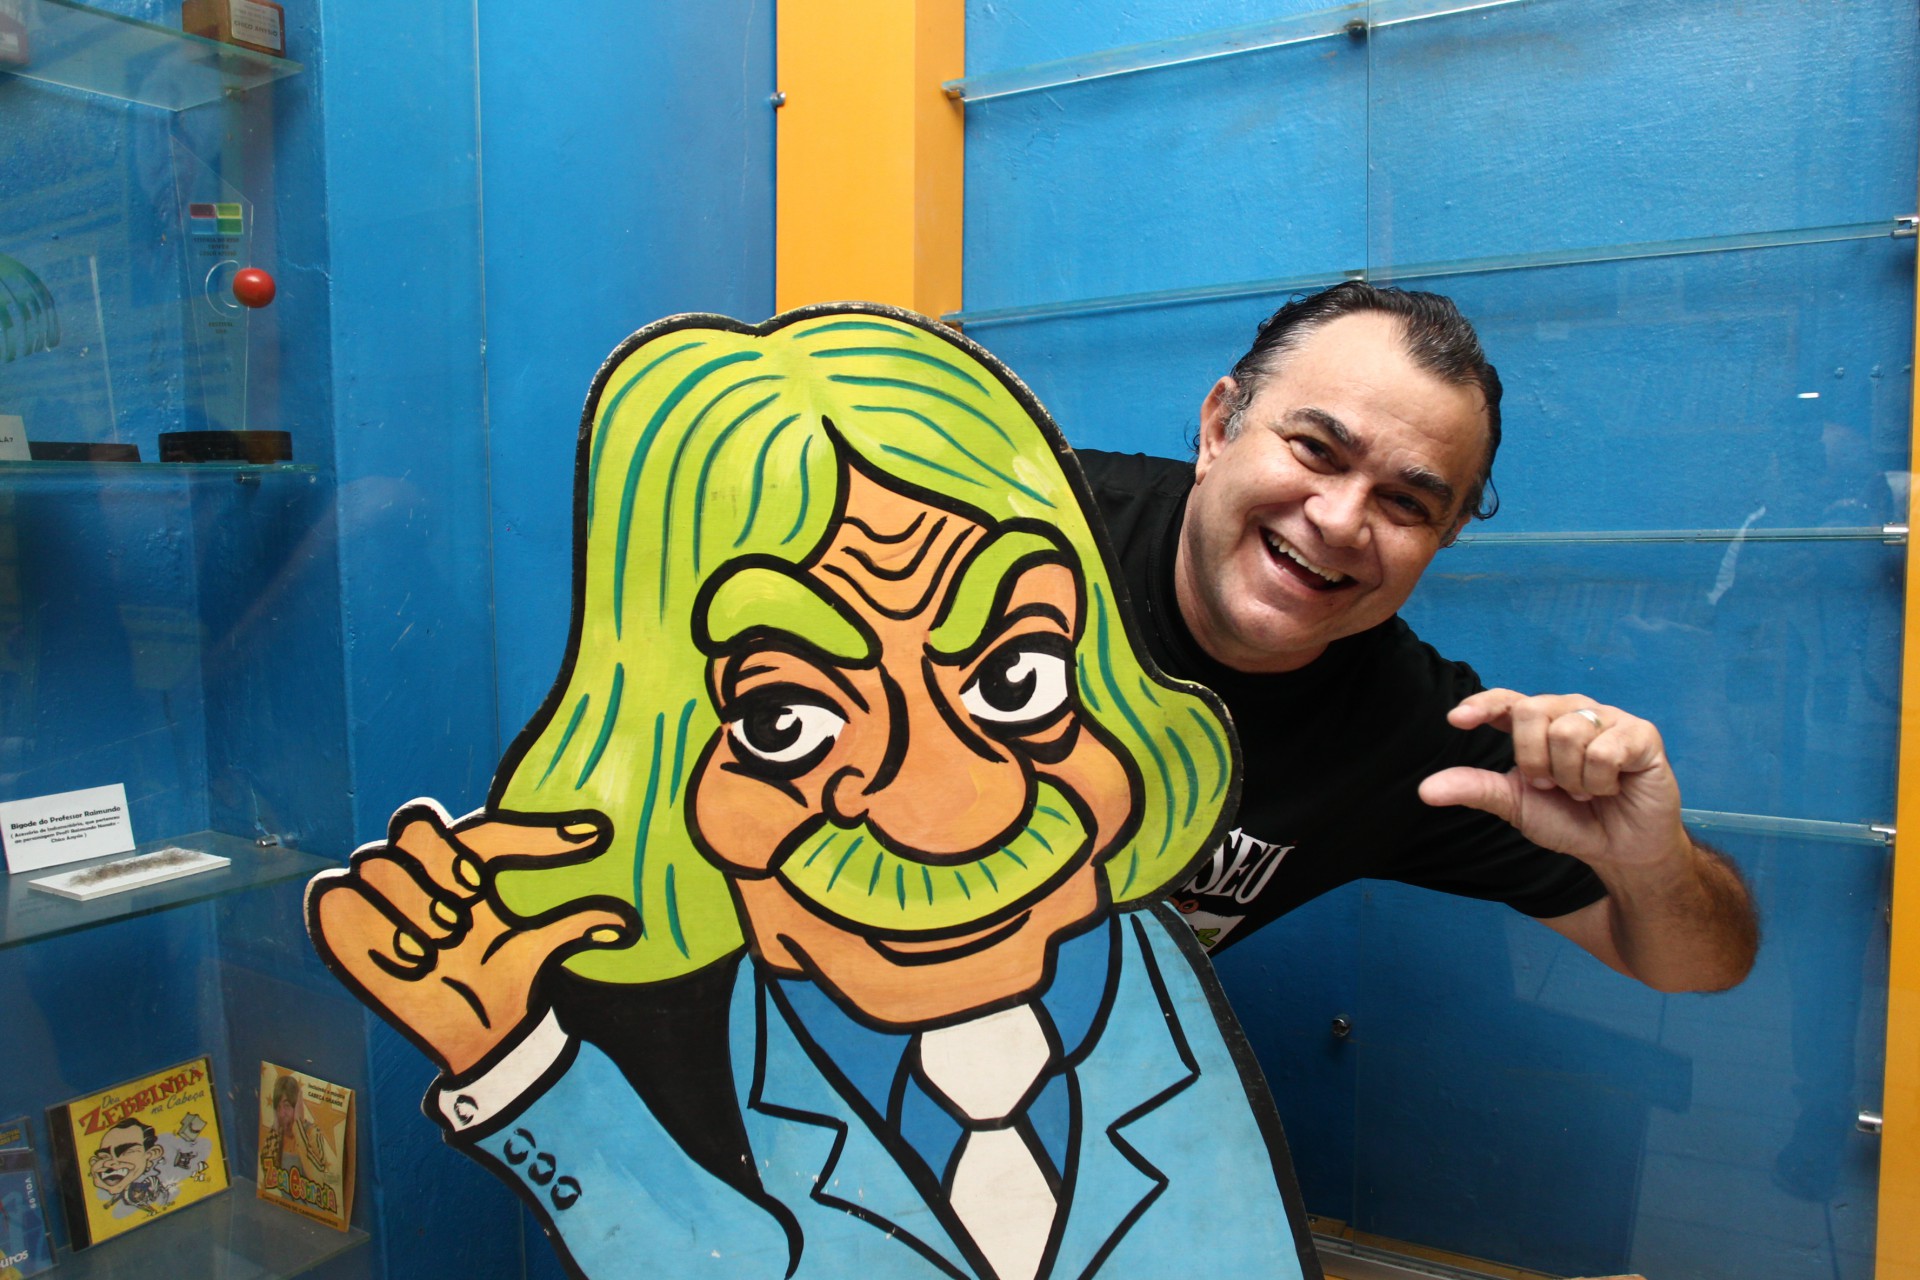 Jader Soares, humorista e historiador conhecido pelo personagem "Zebrinha", em visita guiada do Vida&Arte ao Museu do Humor Cearense, ao lado de totem do Professor Raimundo, personagem de Chico Anysio, cearense de Maranguape (Foto: FABIO LIMA)